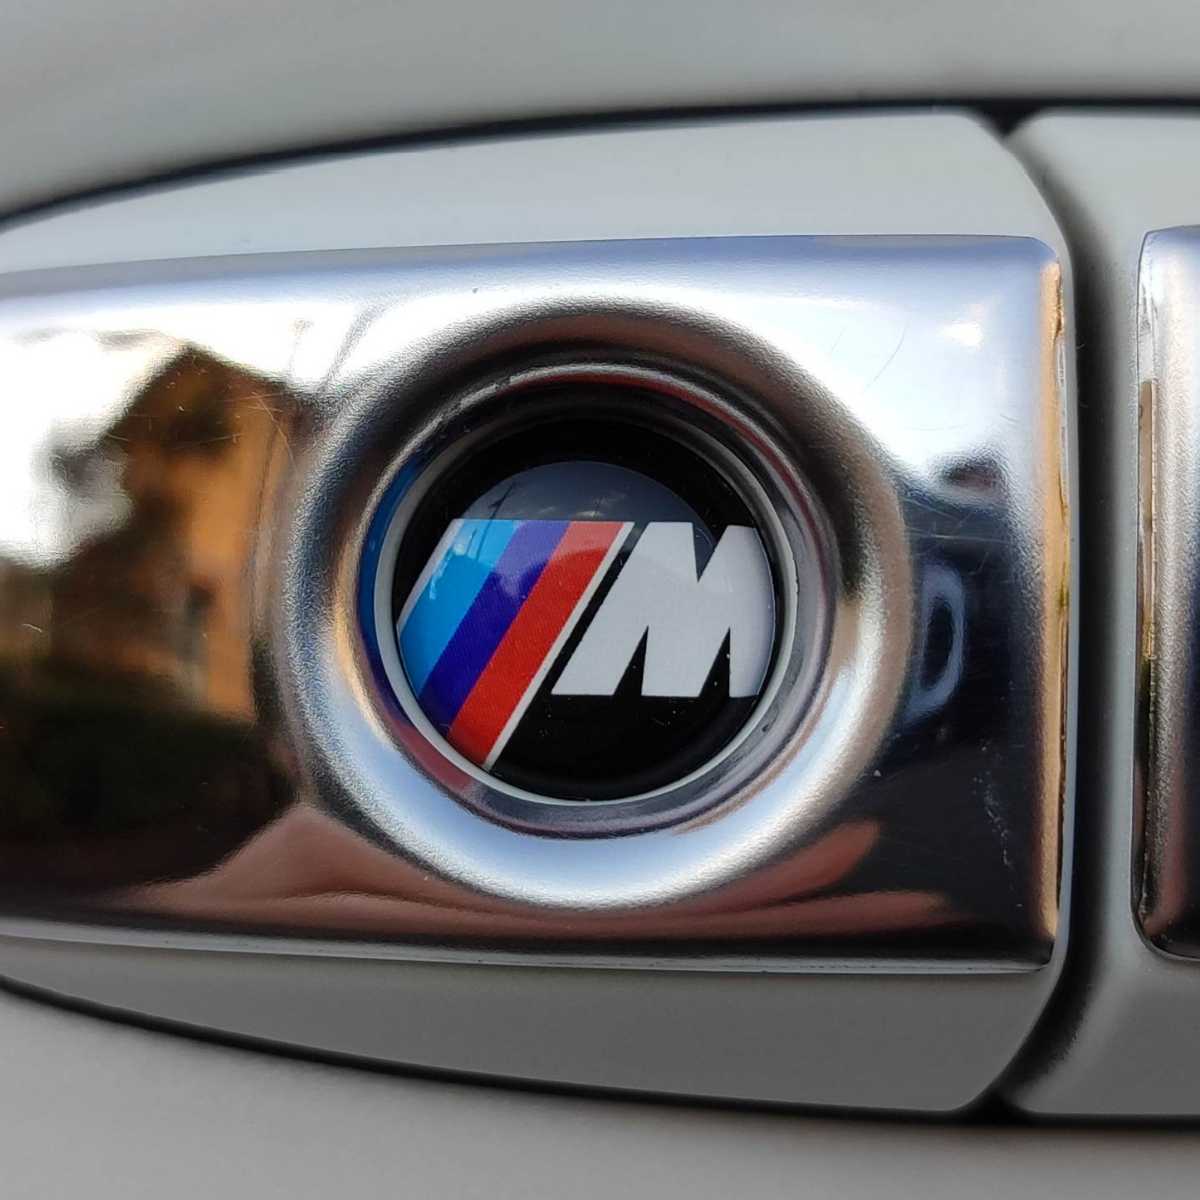 BMW【M】エンブレム 3Dクリスタル 鍵穴ステッカー キーレス専用■E39 E30 E46 E60 E90 F10 F20 F30 X1 X3 X5 x6 x7 x8 x9 Mシリーズ_画像5